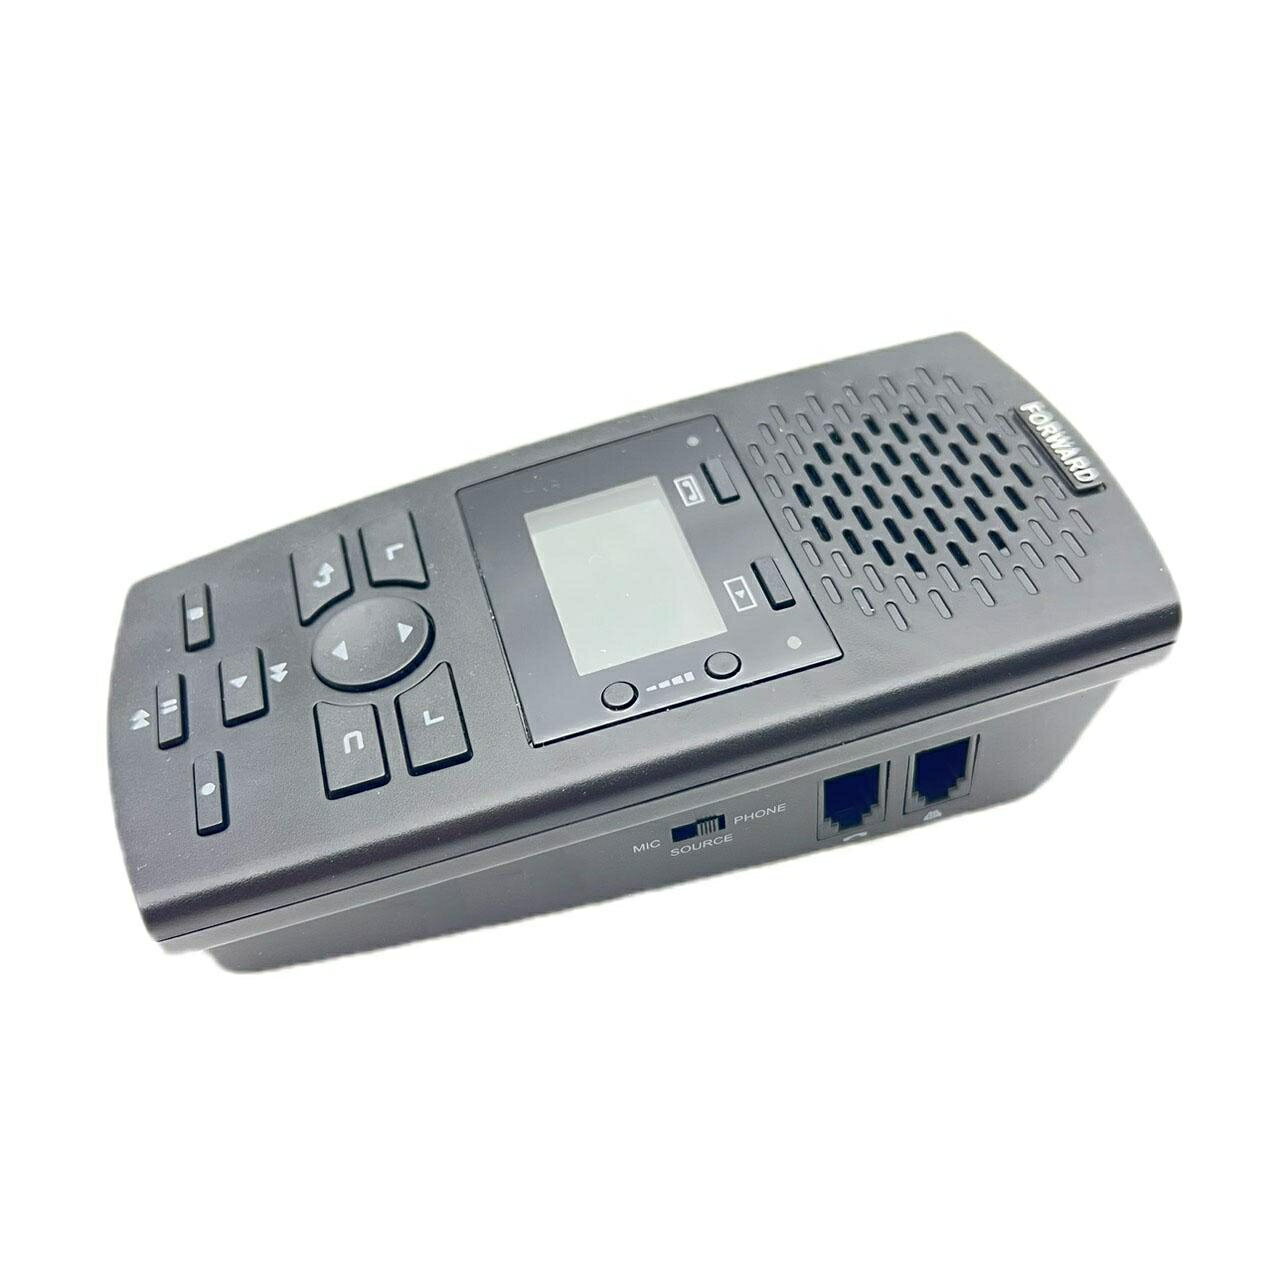 單路電話錄音機 具答錄機功能 語音宣告 無需電腦隨插隨錄 加贈16G記憶卡 FRBA120